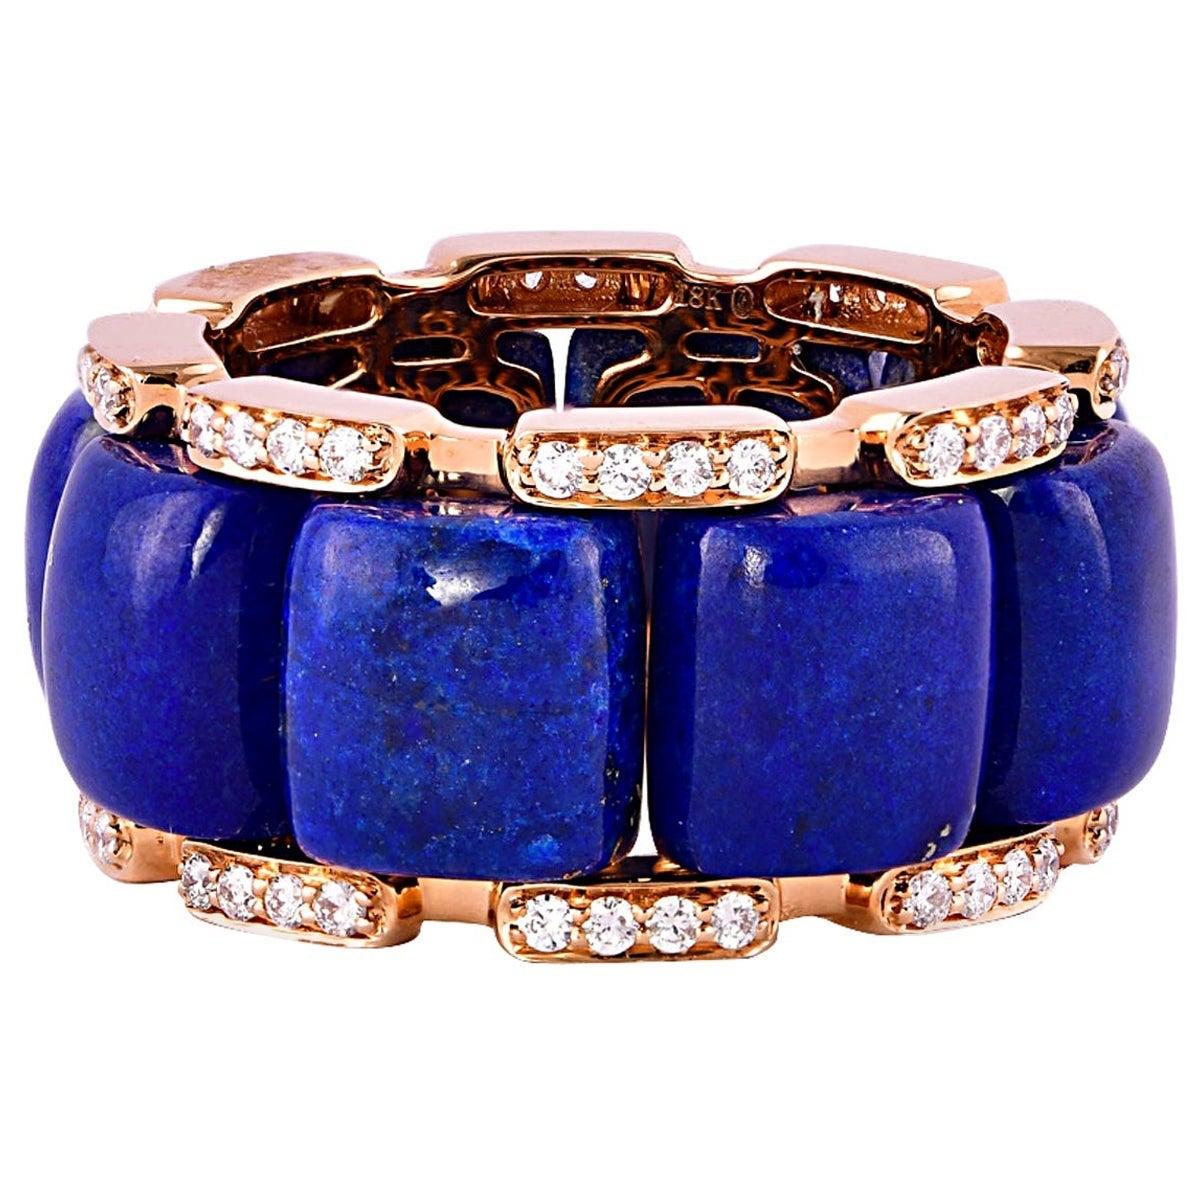 For Sale:  19.32 Carat Lapis Lazuli and White Diamond Ring in 18 Karat Rose Gold